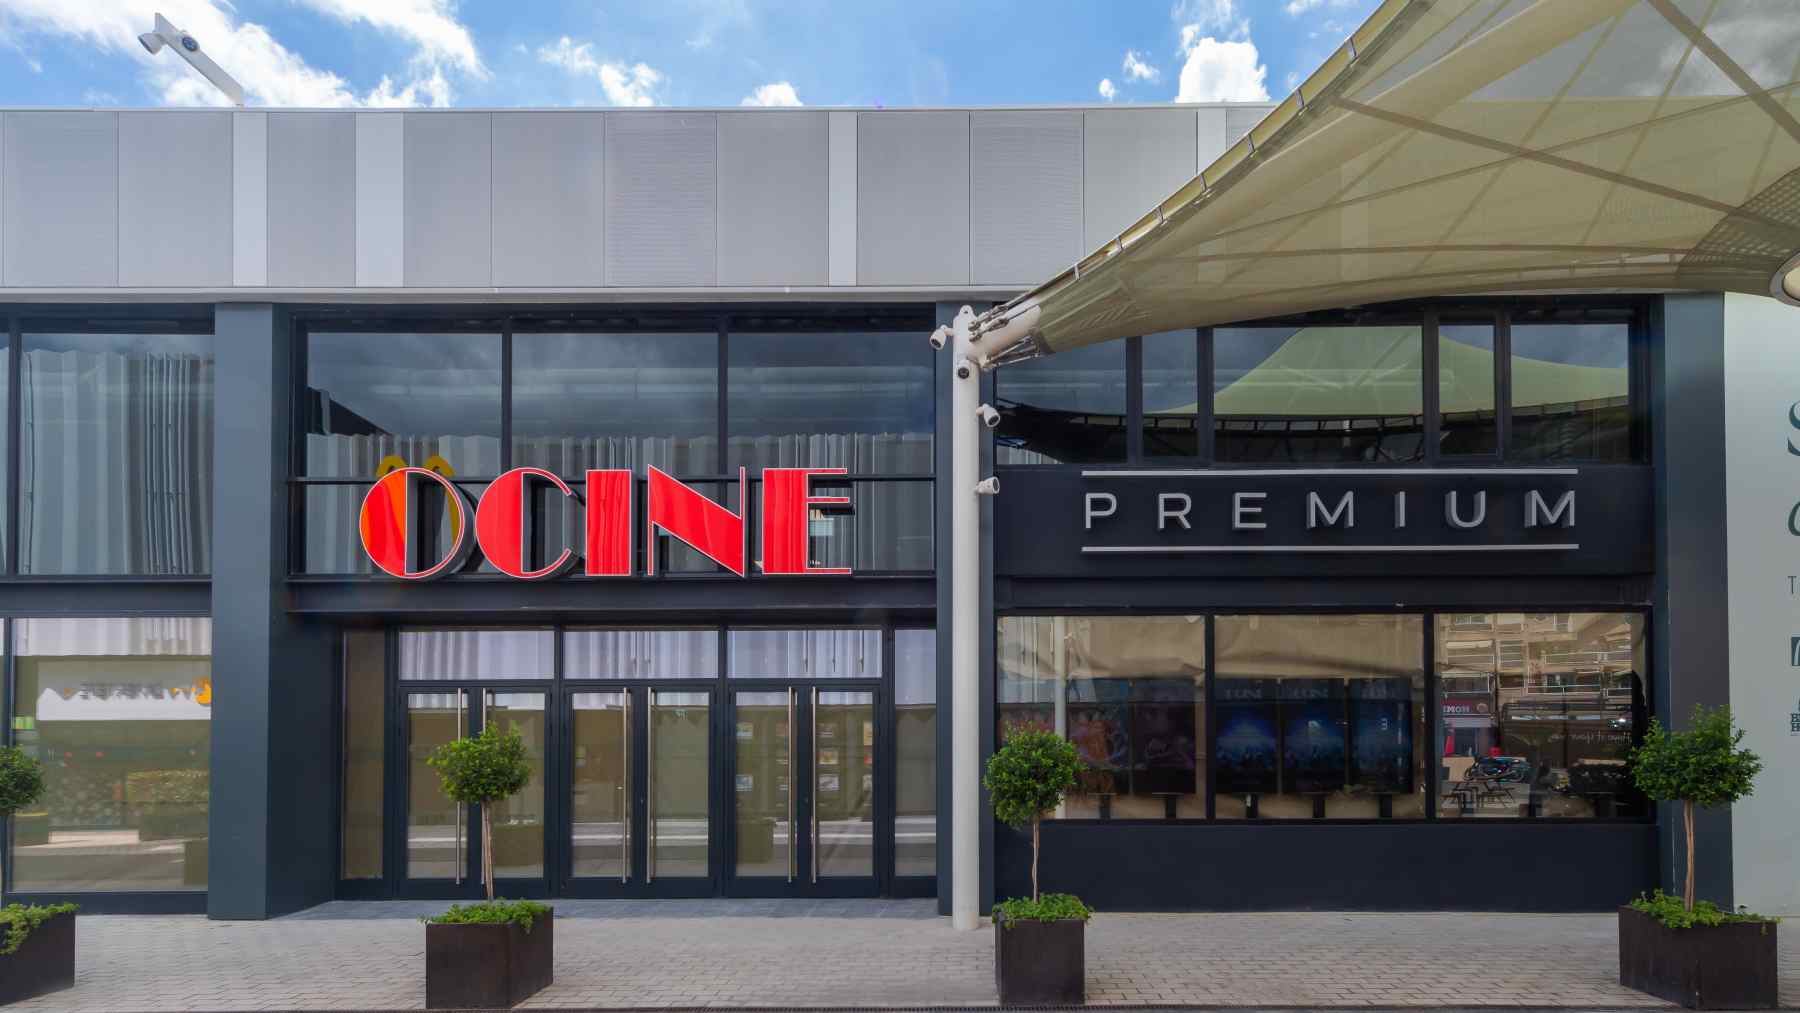 OCINE PREMIUM abre sus puertas el 26 de agosto en el centro comercial Porto Pi